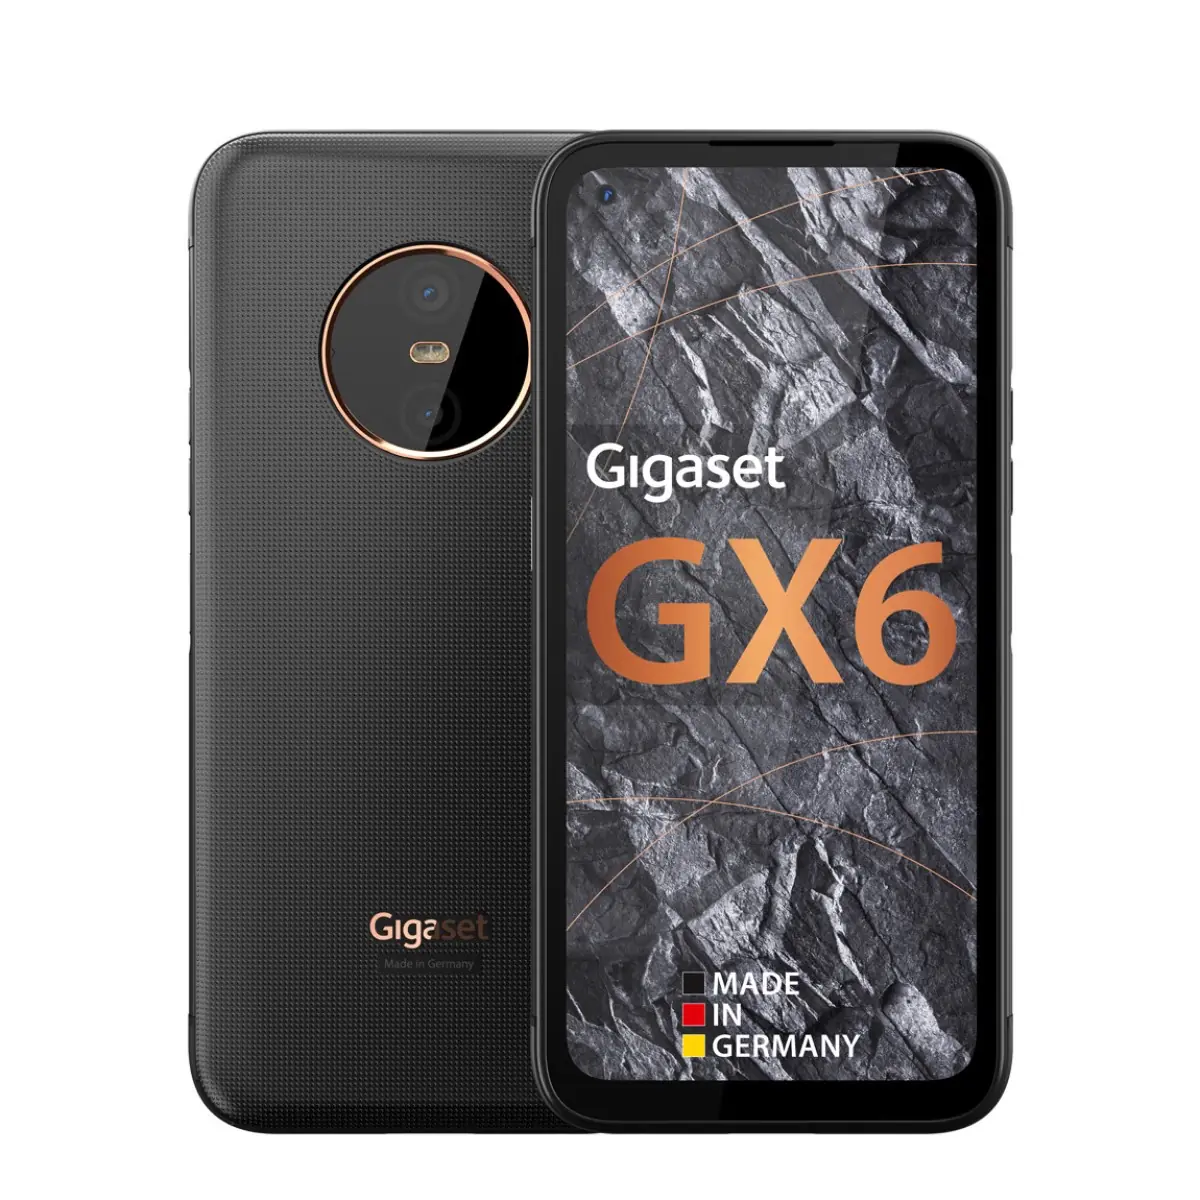 GX6 robuust mobiel